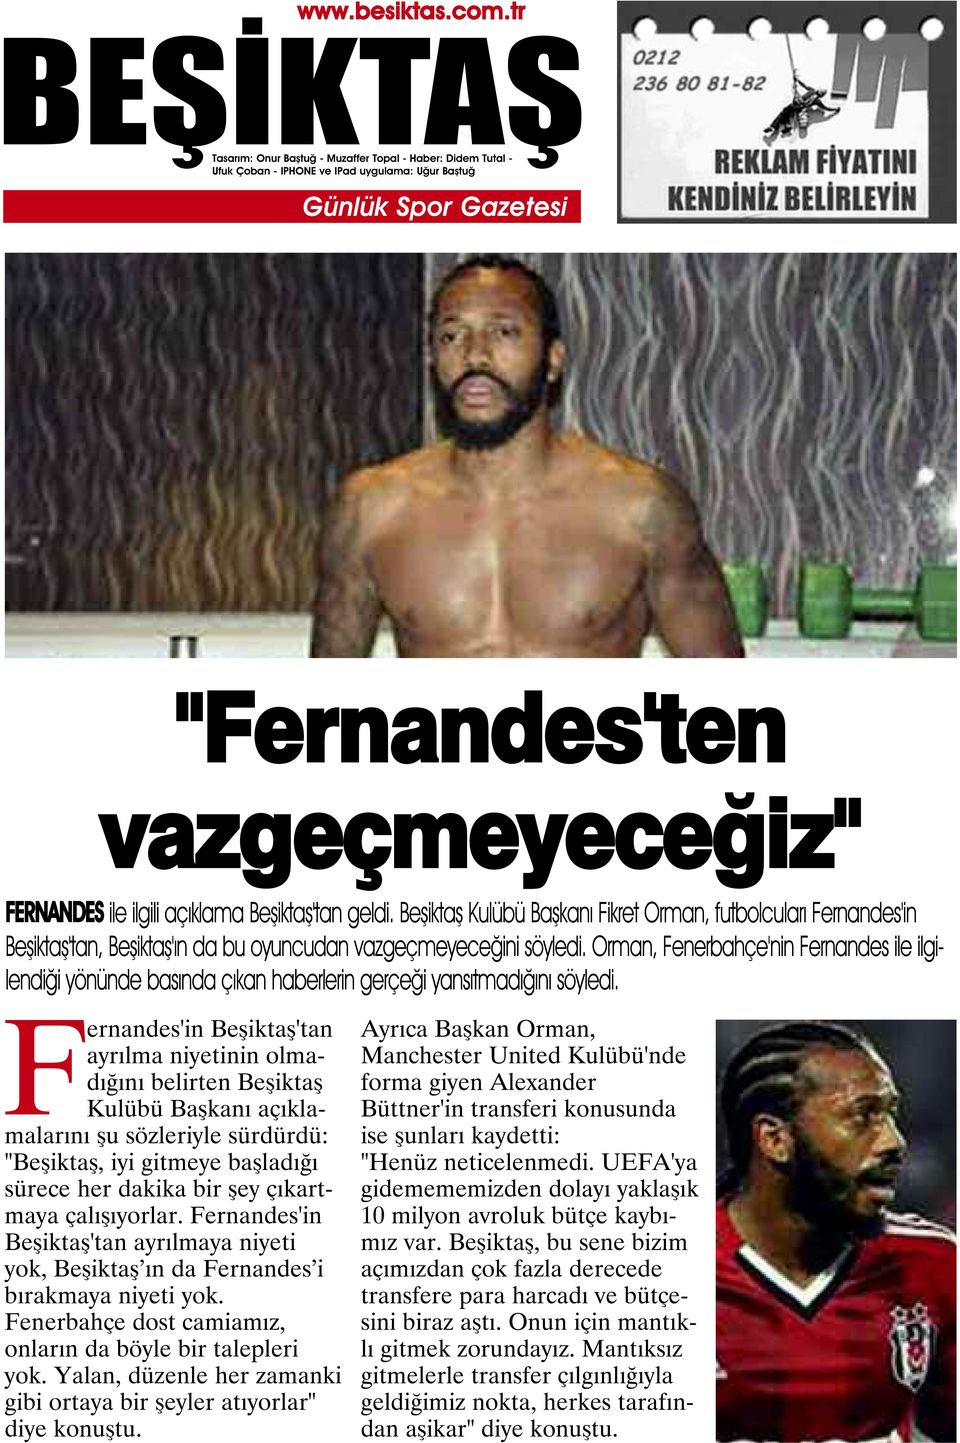 Orman, Fenerbahçe'nin Fernandes ile ilgilendiği yönünde basında çıkan haberlerin gerçeği yansıtmadığını söyledi.